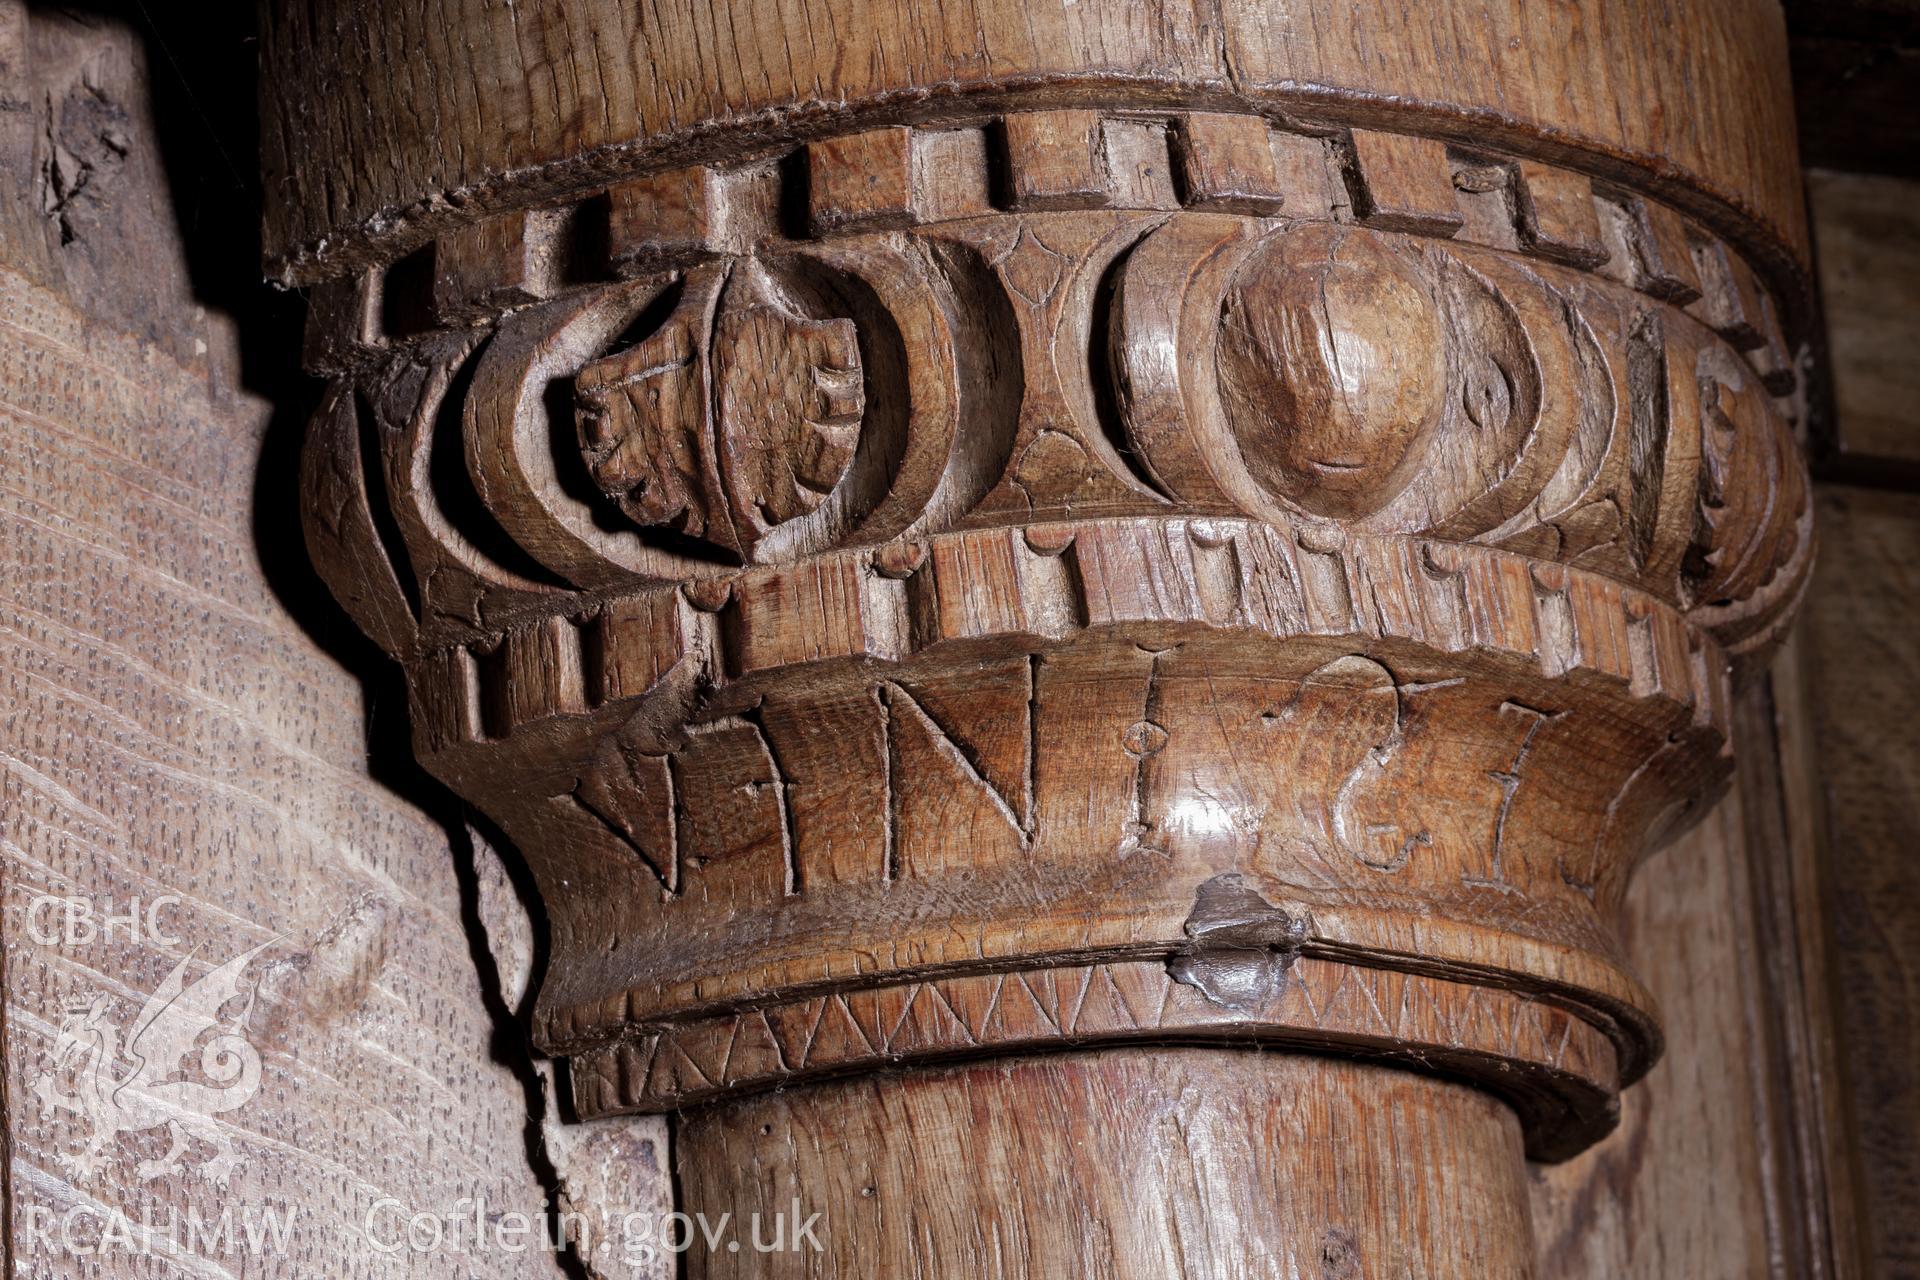 Detail of inscription on column bosses